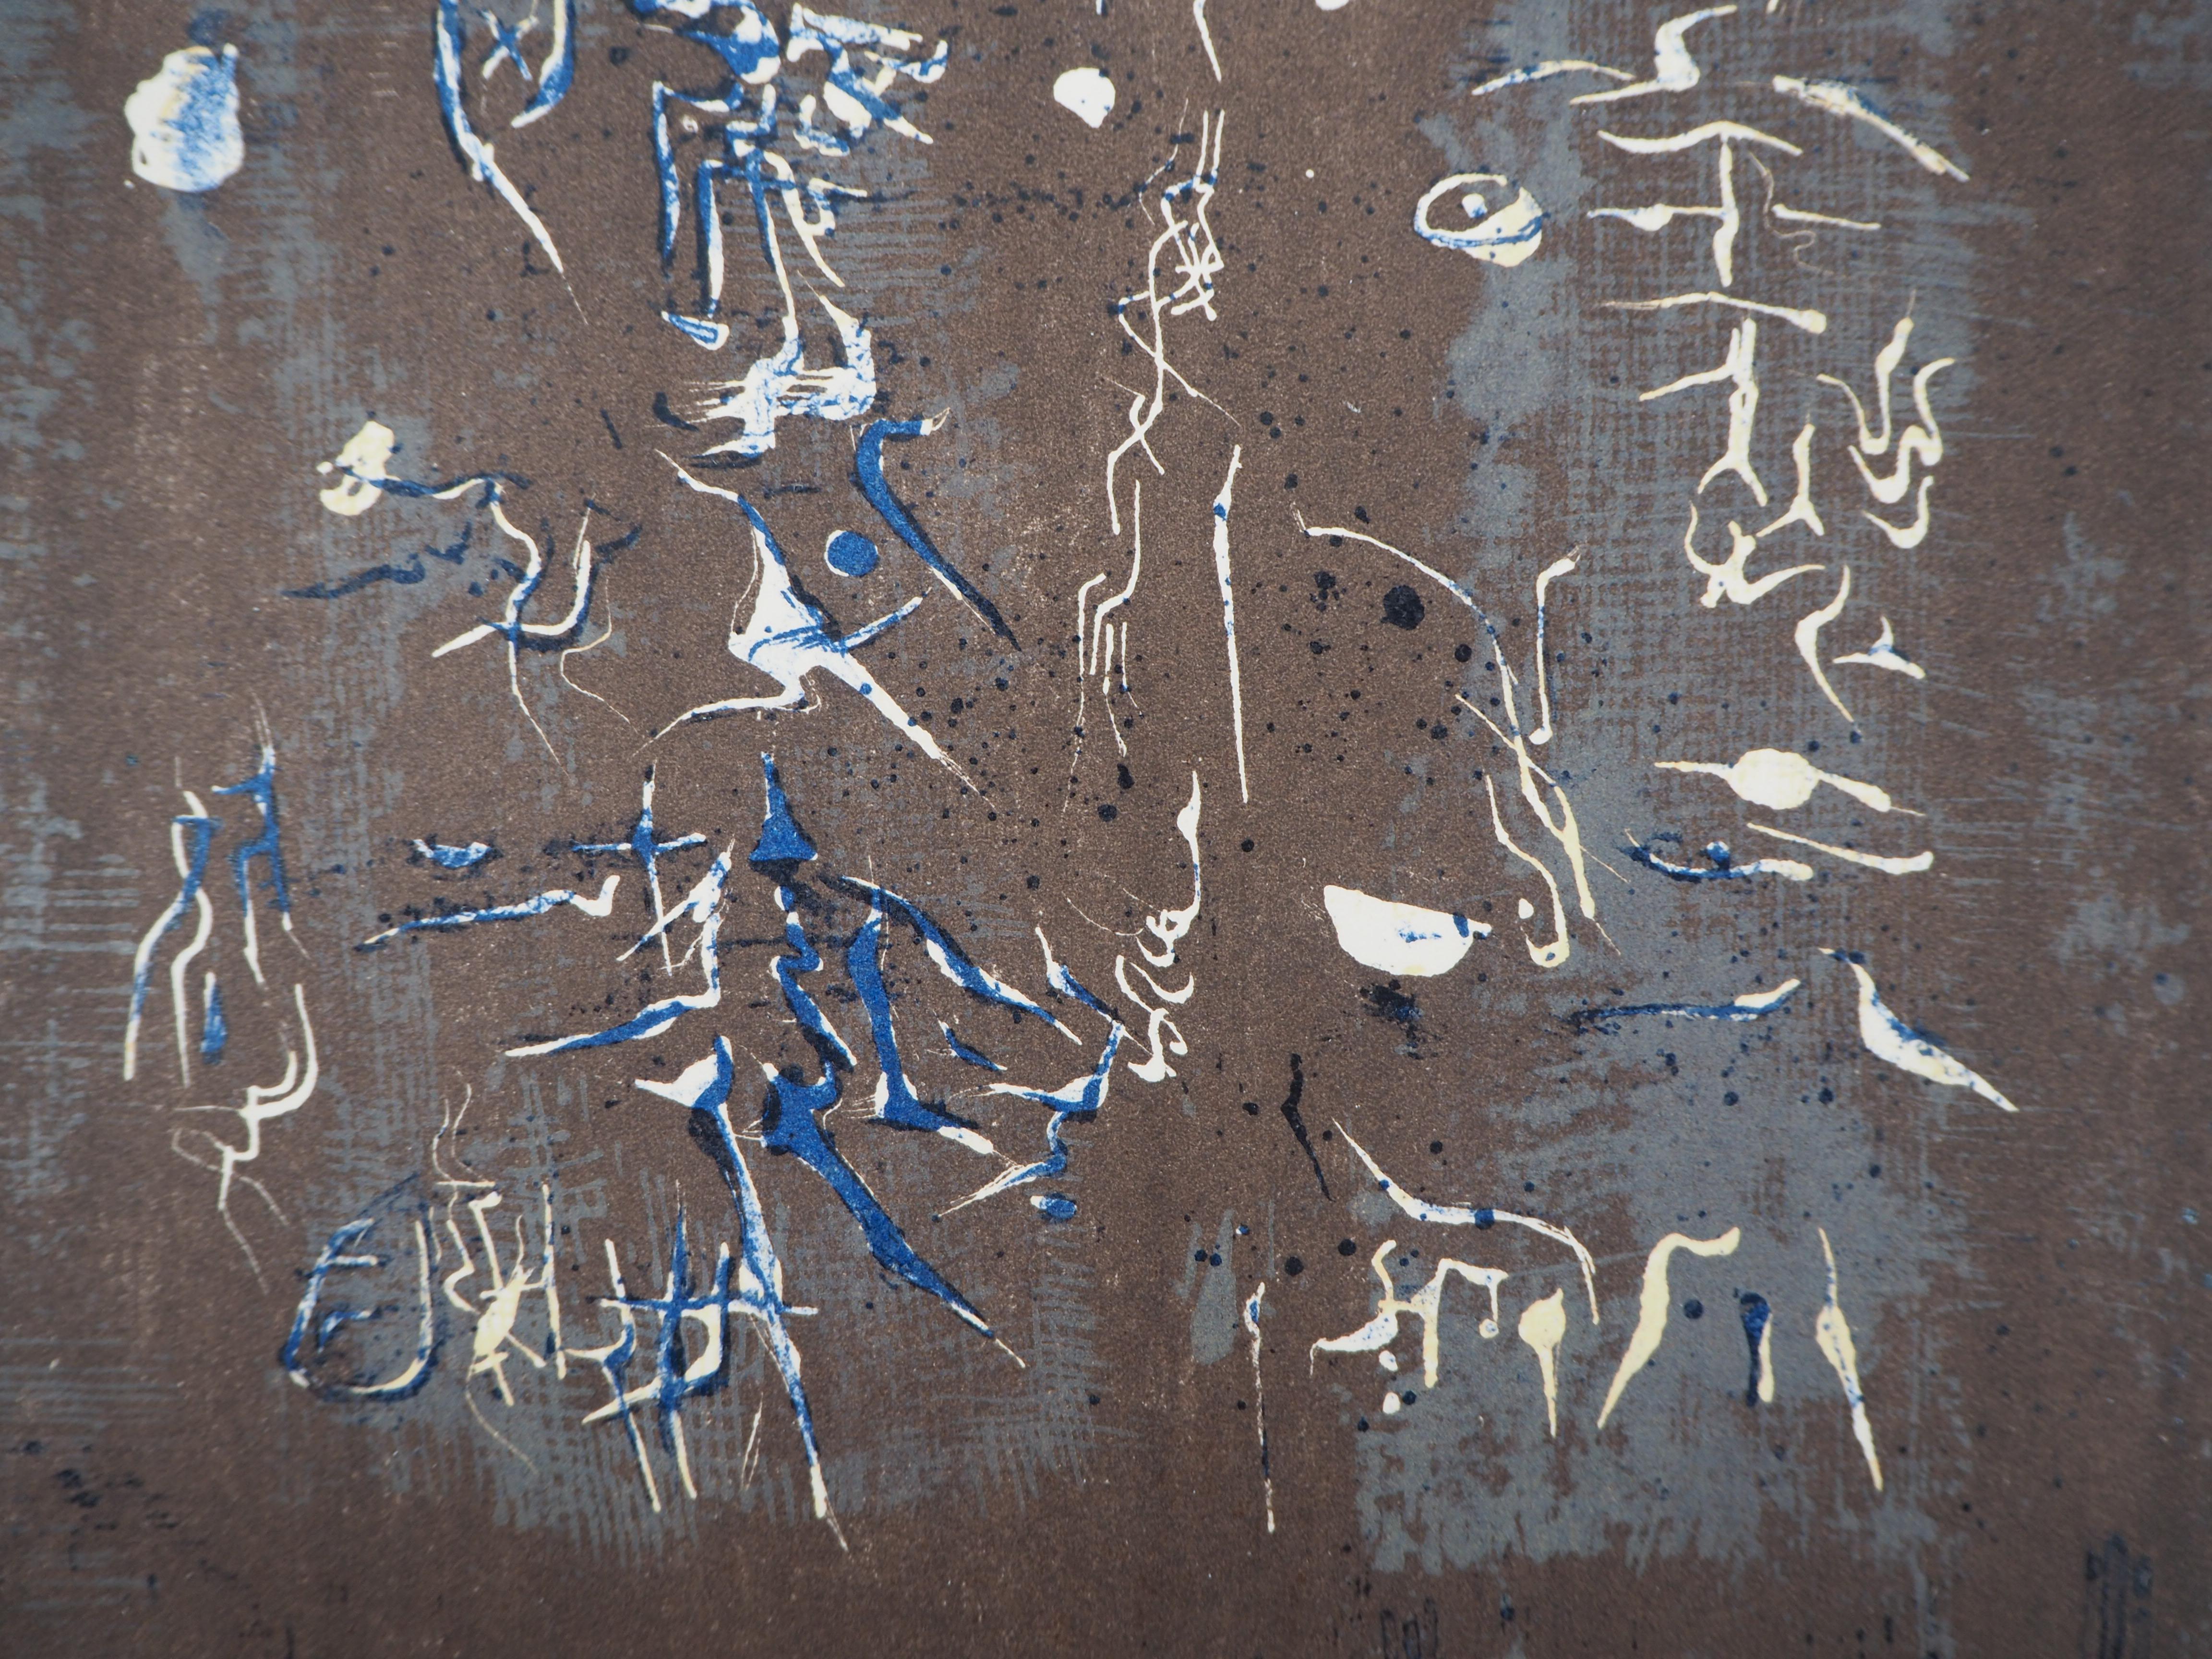 Zao WOU-KI 
Komposition, 1958

Original-Lithografie (gedruckt in der Werkstatt Desjobert).
Auf Velin 31 x 24 cm (ca. 12 x 10 Zoll)
Ausgabe San Lazarro, 1958

REFERENZEN : Gesamtkatalog Agerup #113

Ausgezeichneter Zustand